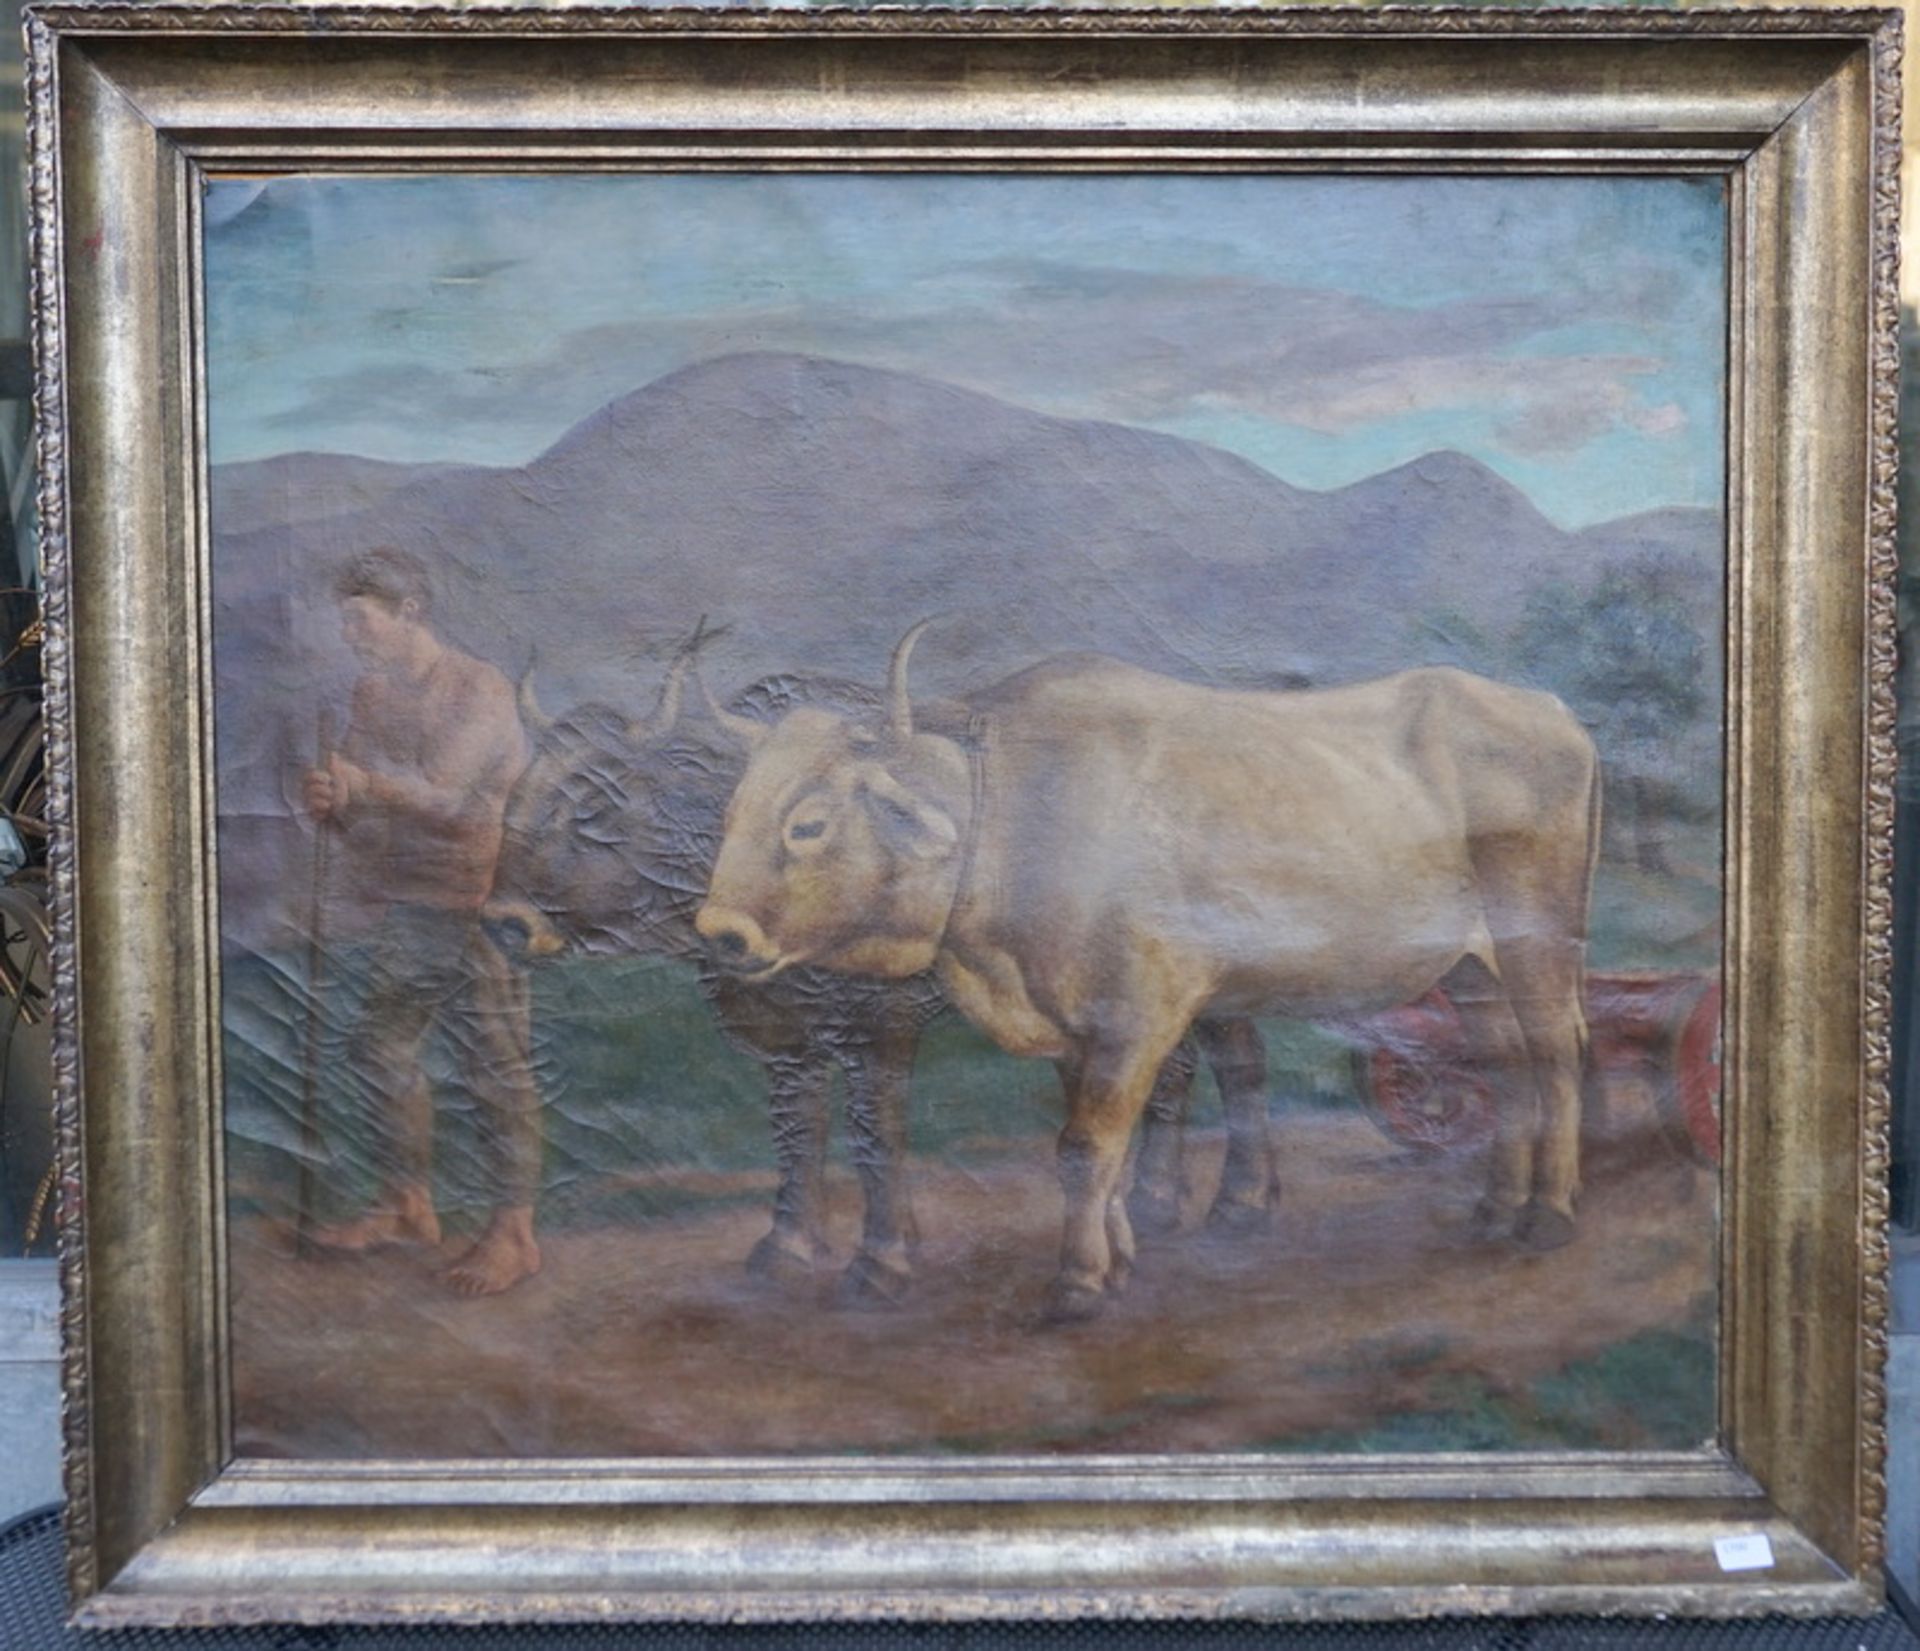 Oppi, Ubaldo: Feldarbeiter mit Ochsengespann dat 1927/28